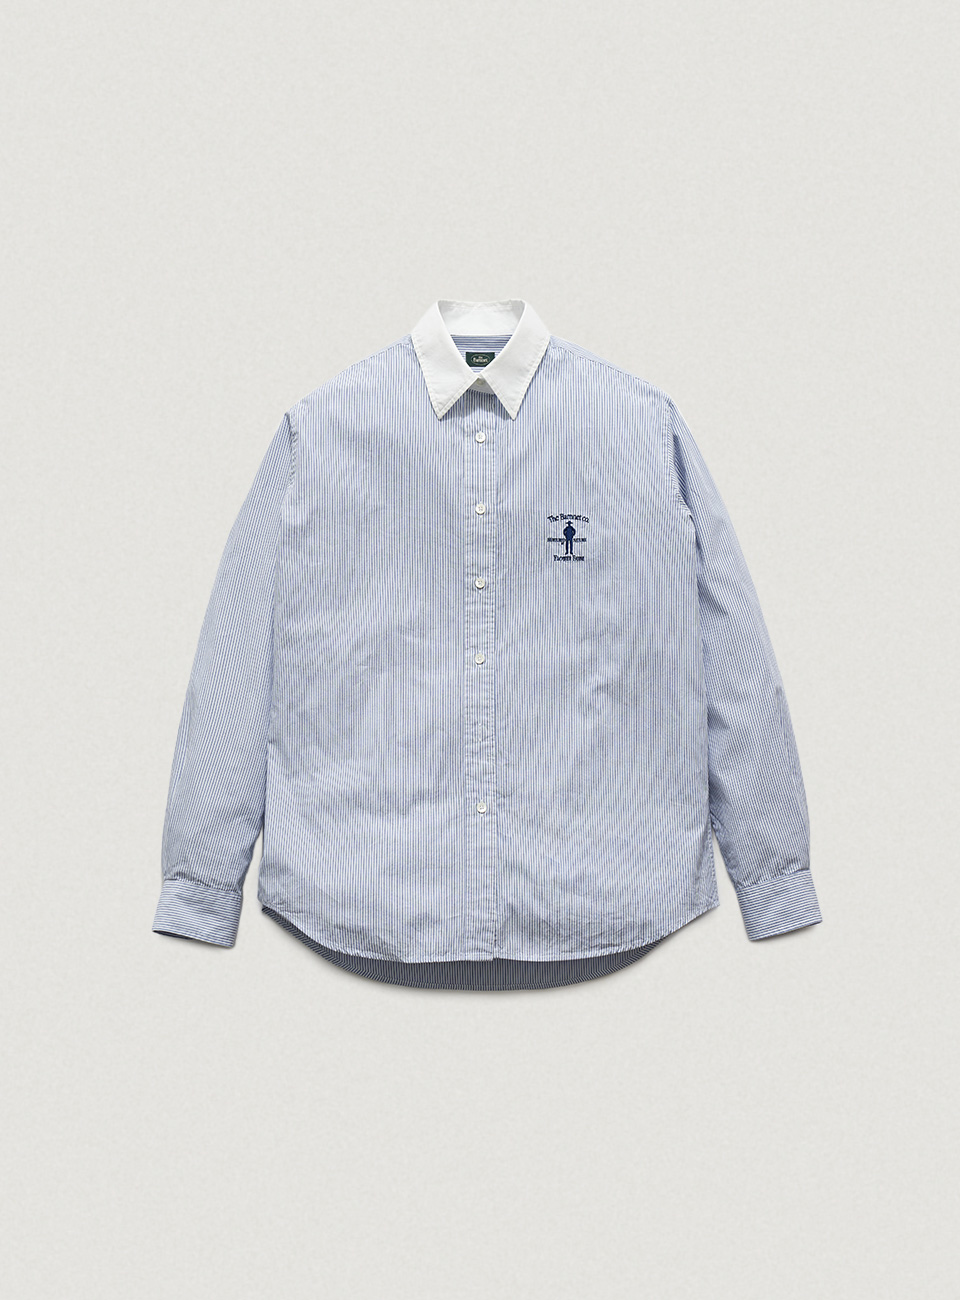 Blue Striped Flower Farm Uniform Shirt by SUNWELL[6월 초 순차 배송]